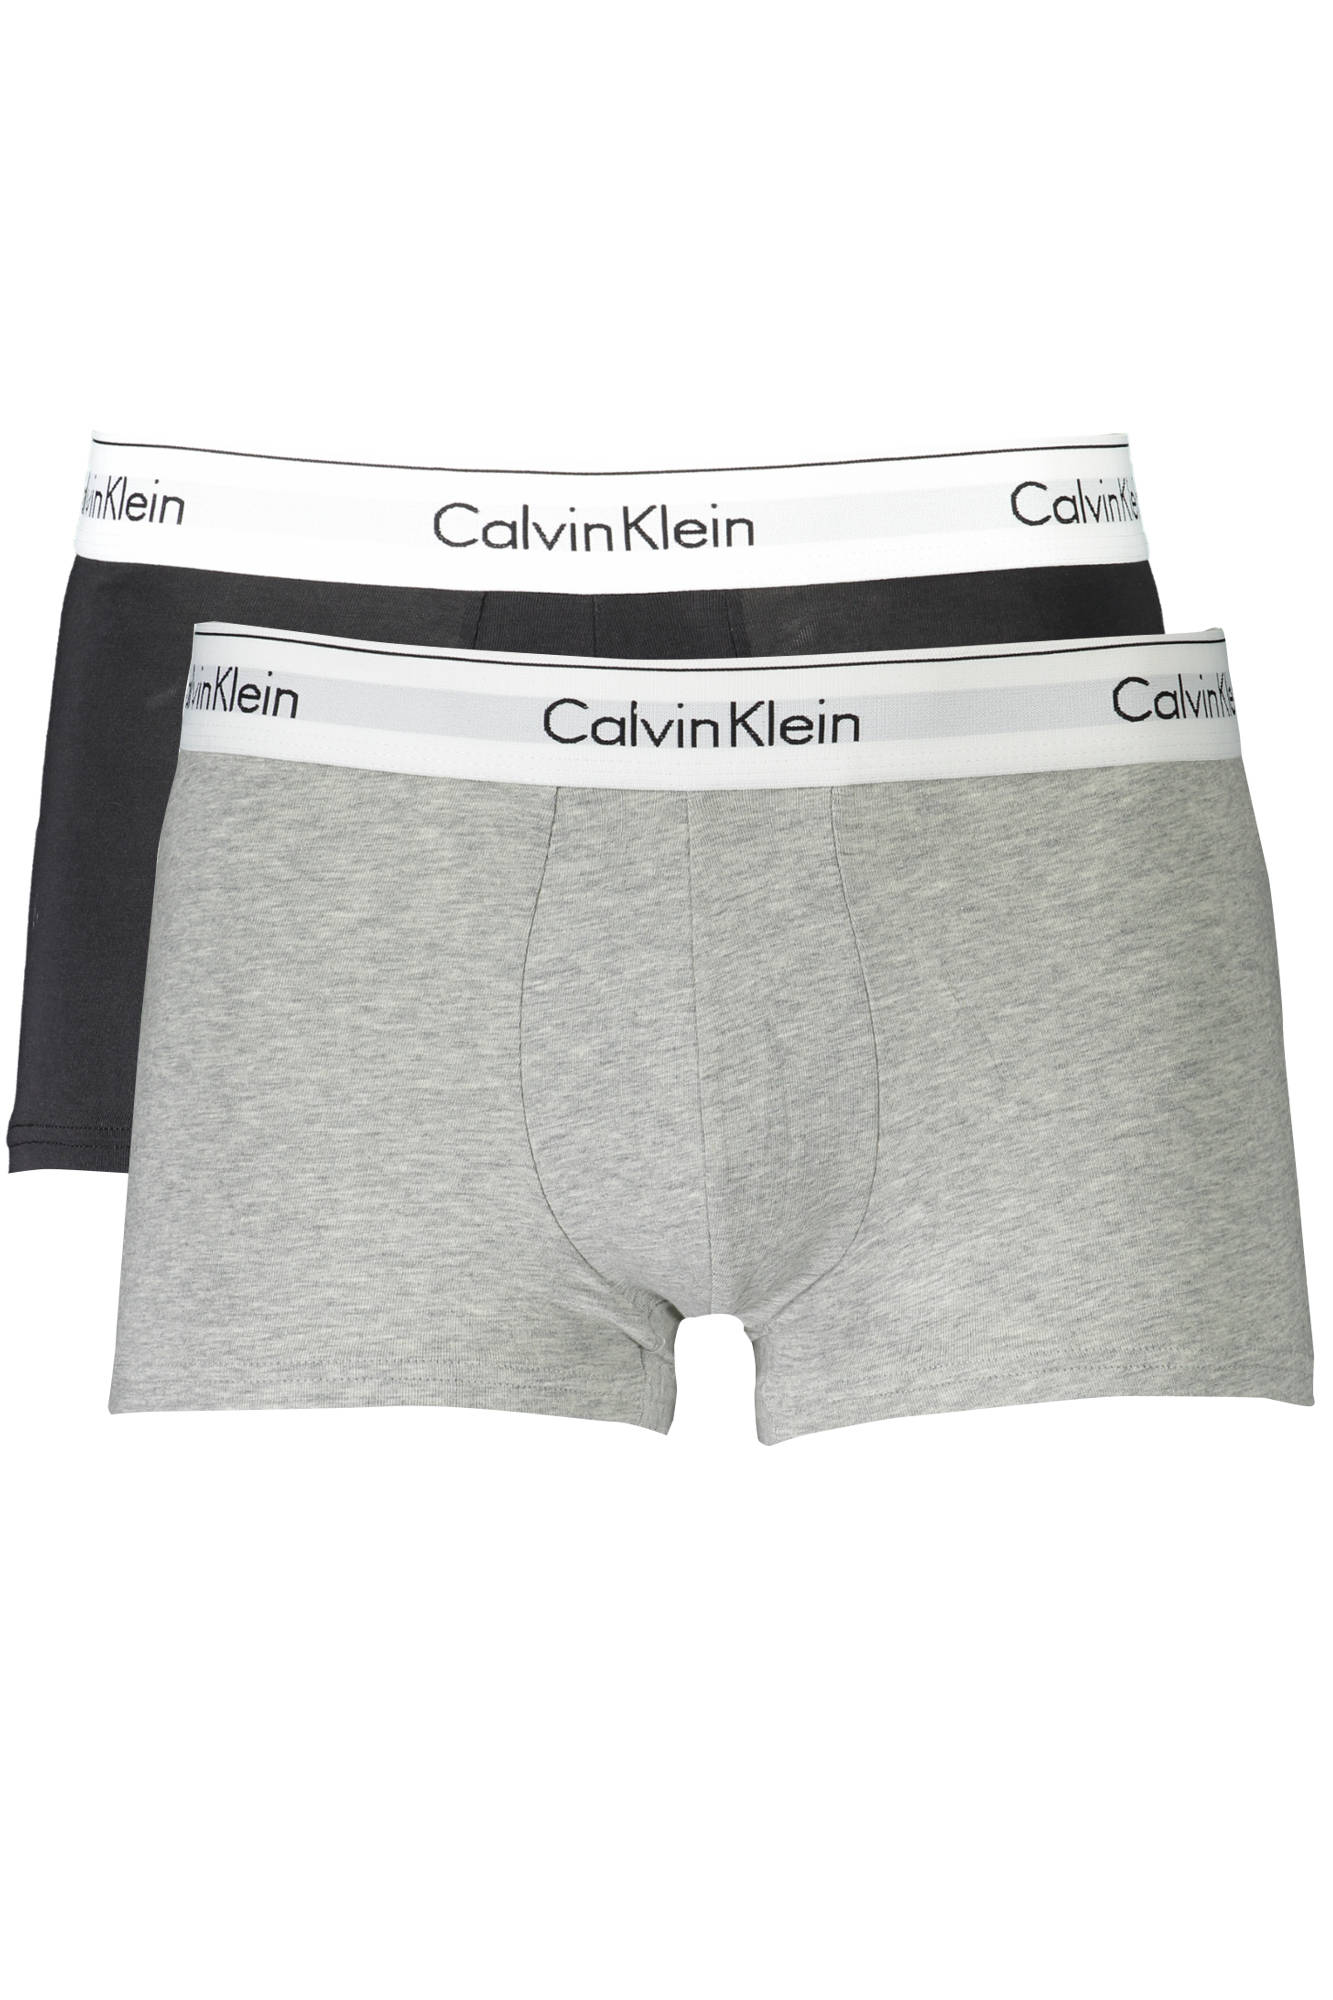 Calvin Klein Intimo Uomo grigio cotone SF472 taglia S